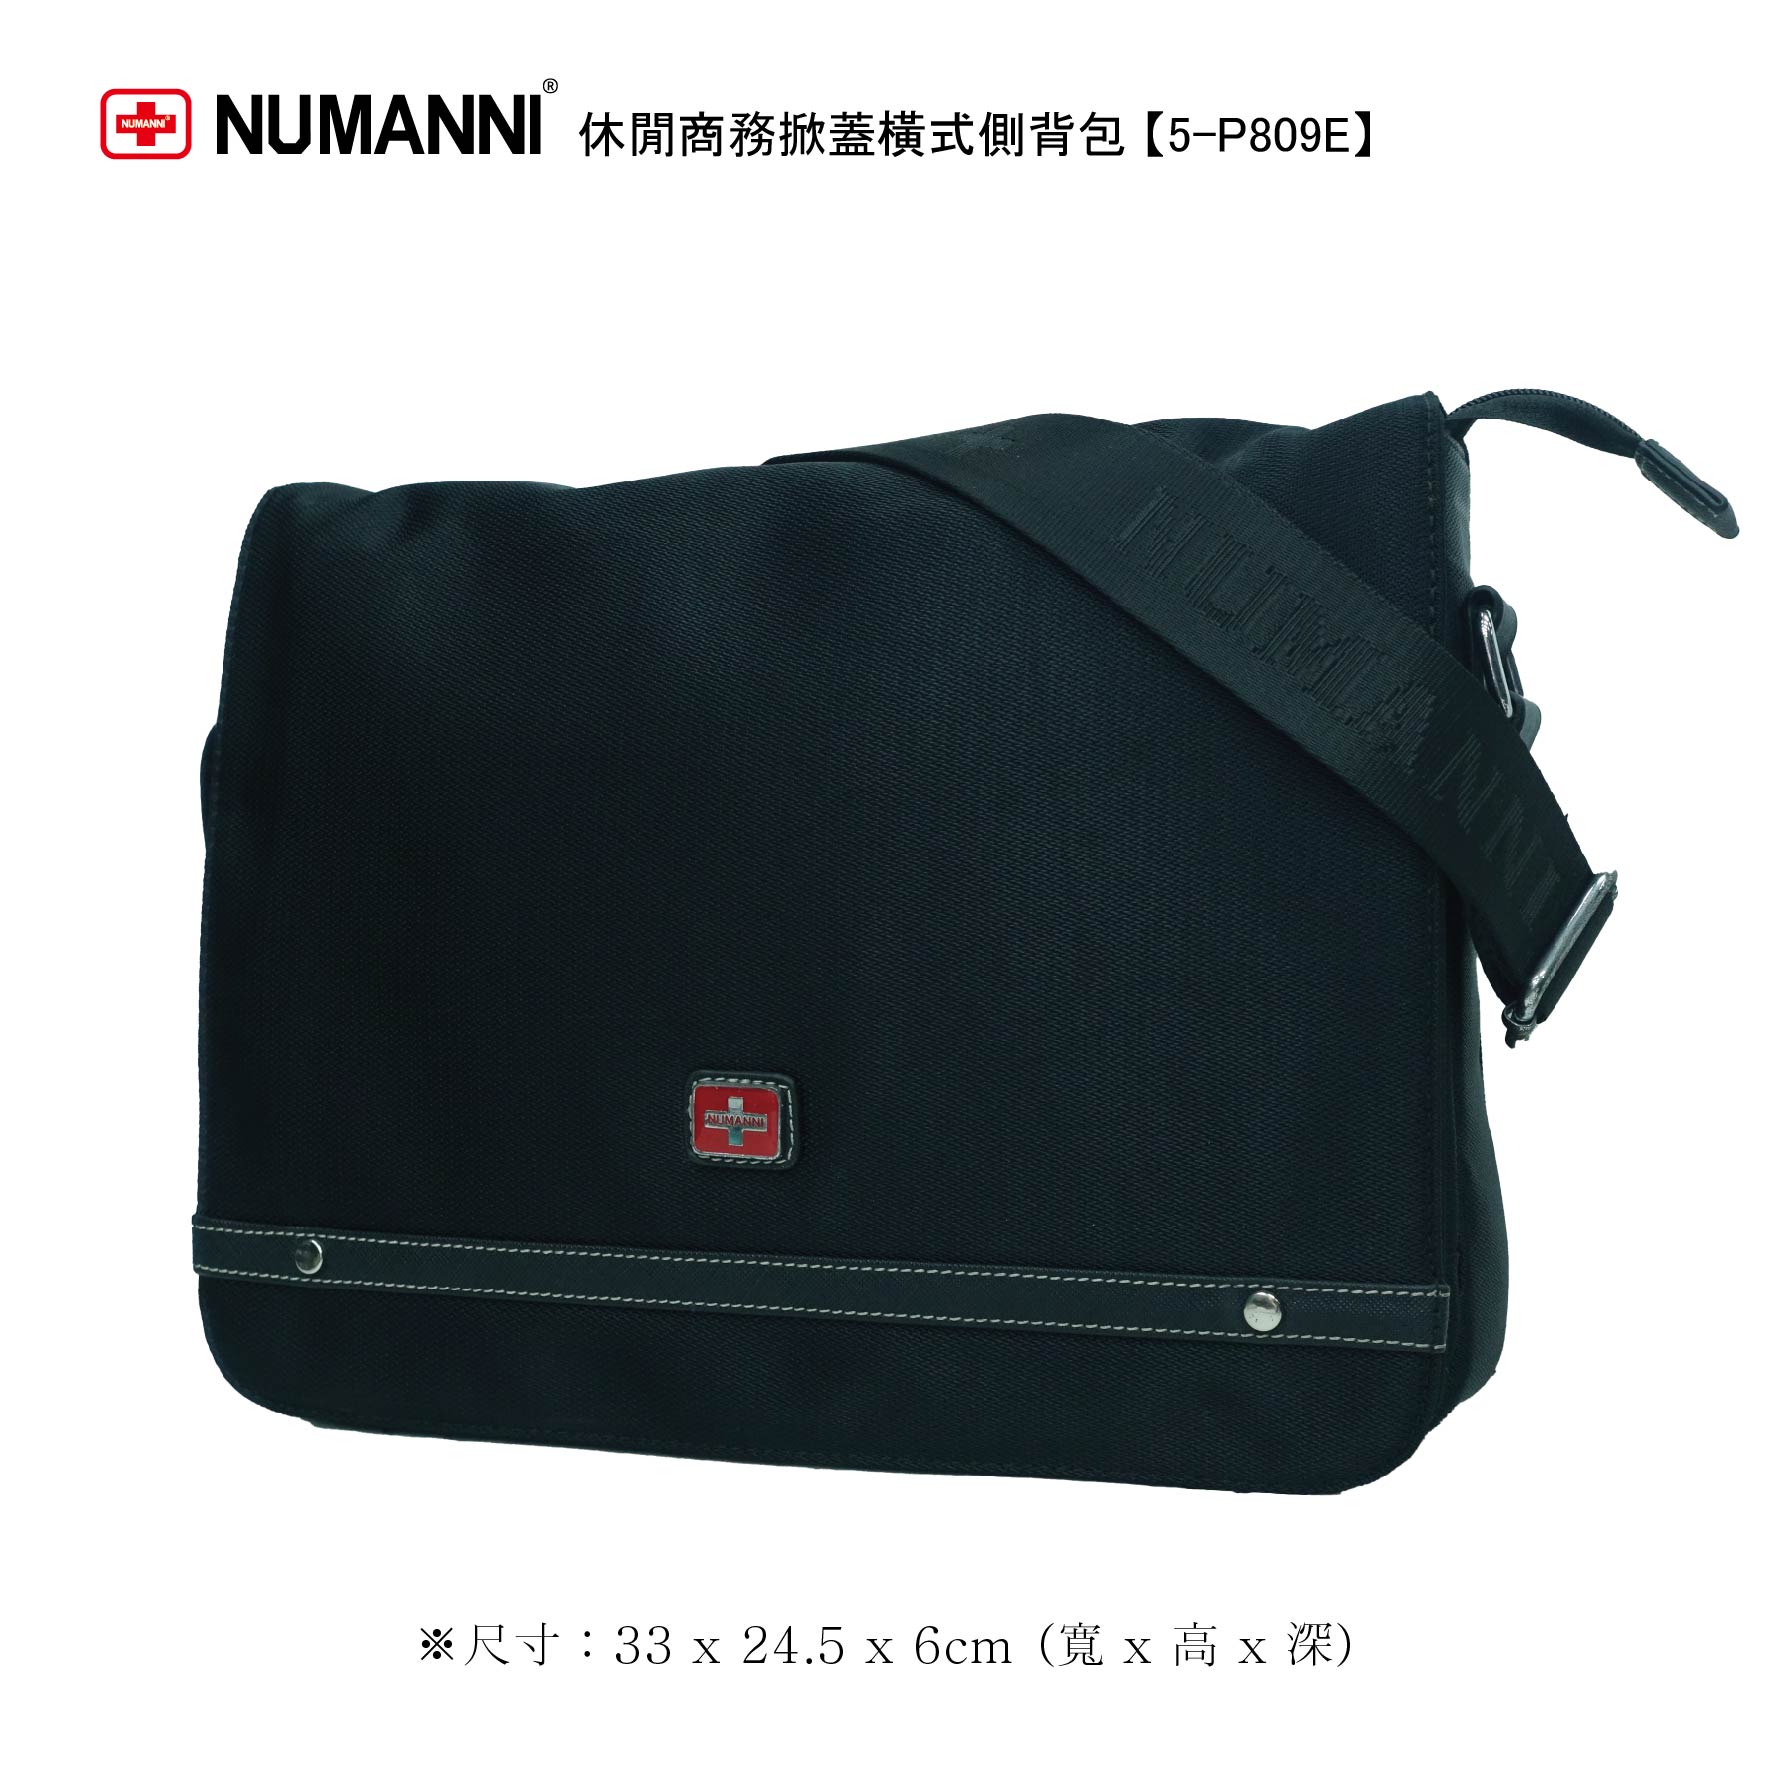 5-P809E【 NUMANNI 奴曼尼 】休閒商務掀蓋橫式側背包